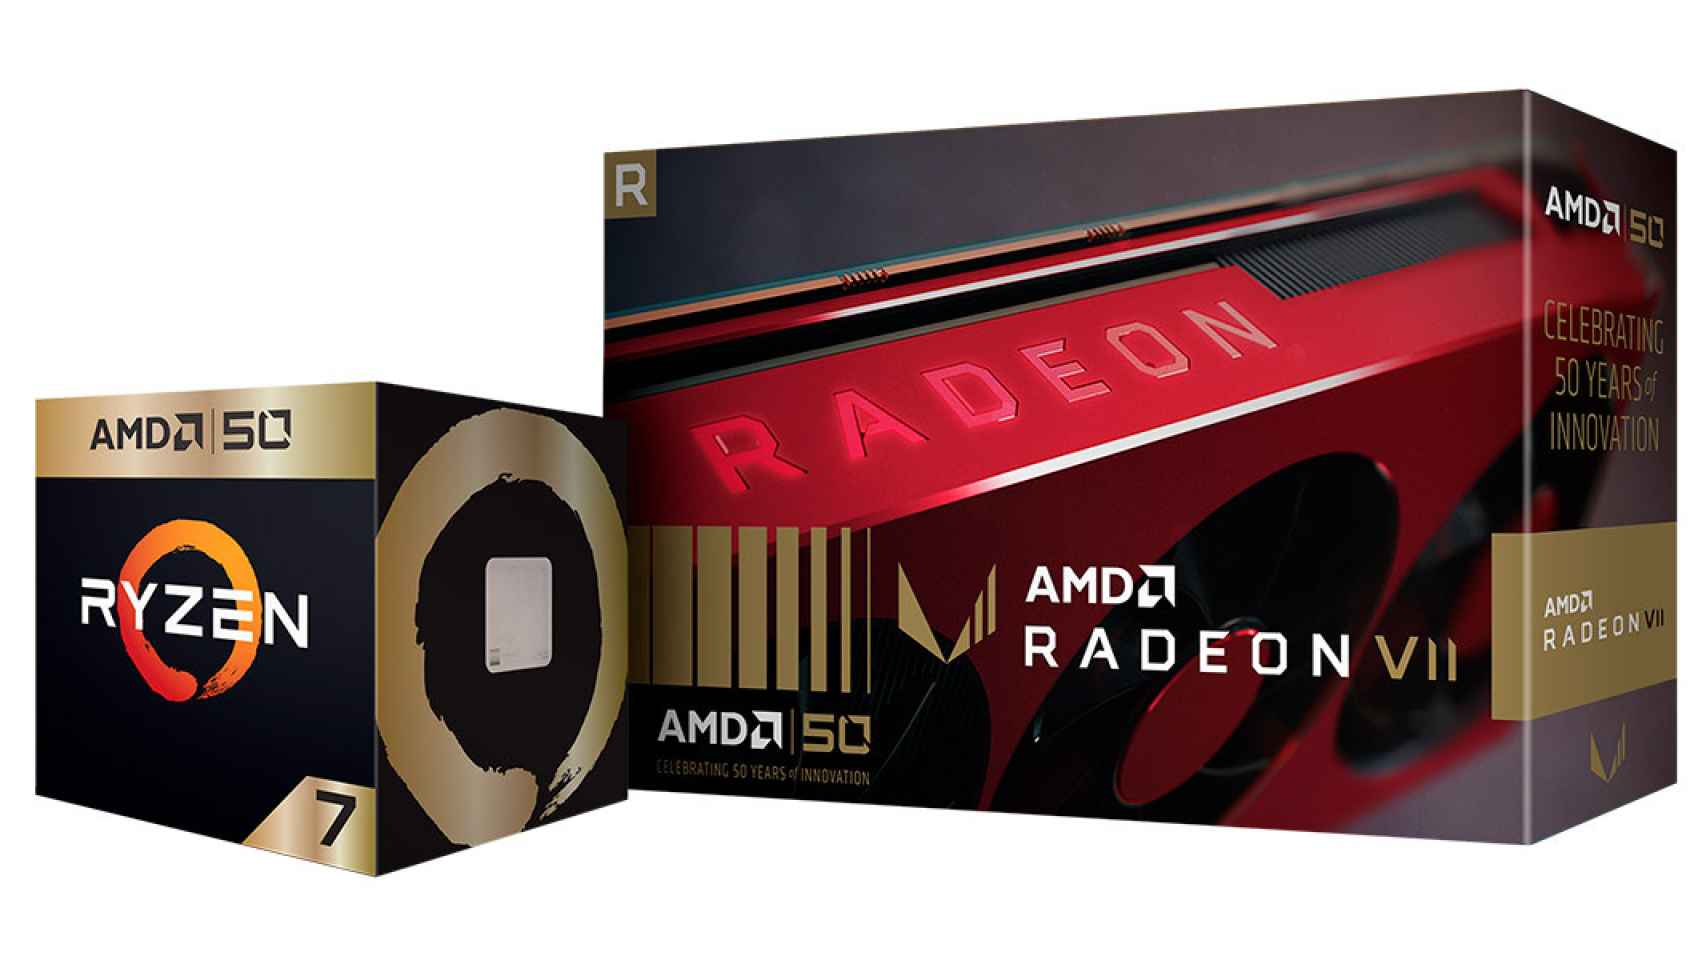 Aniversario-de-AMD-50-1